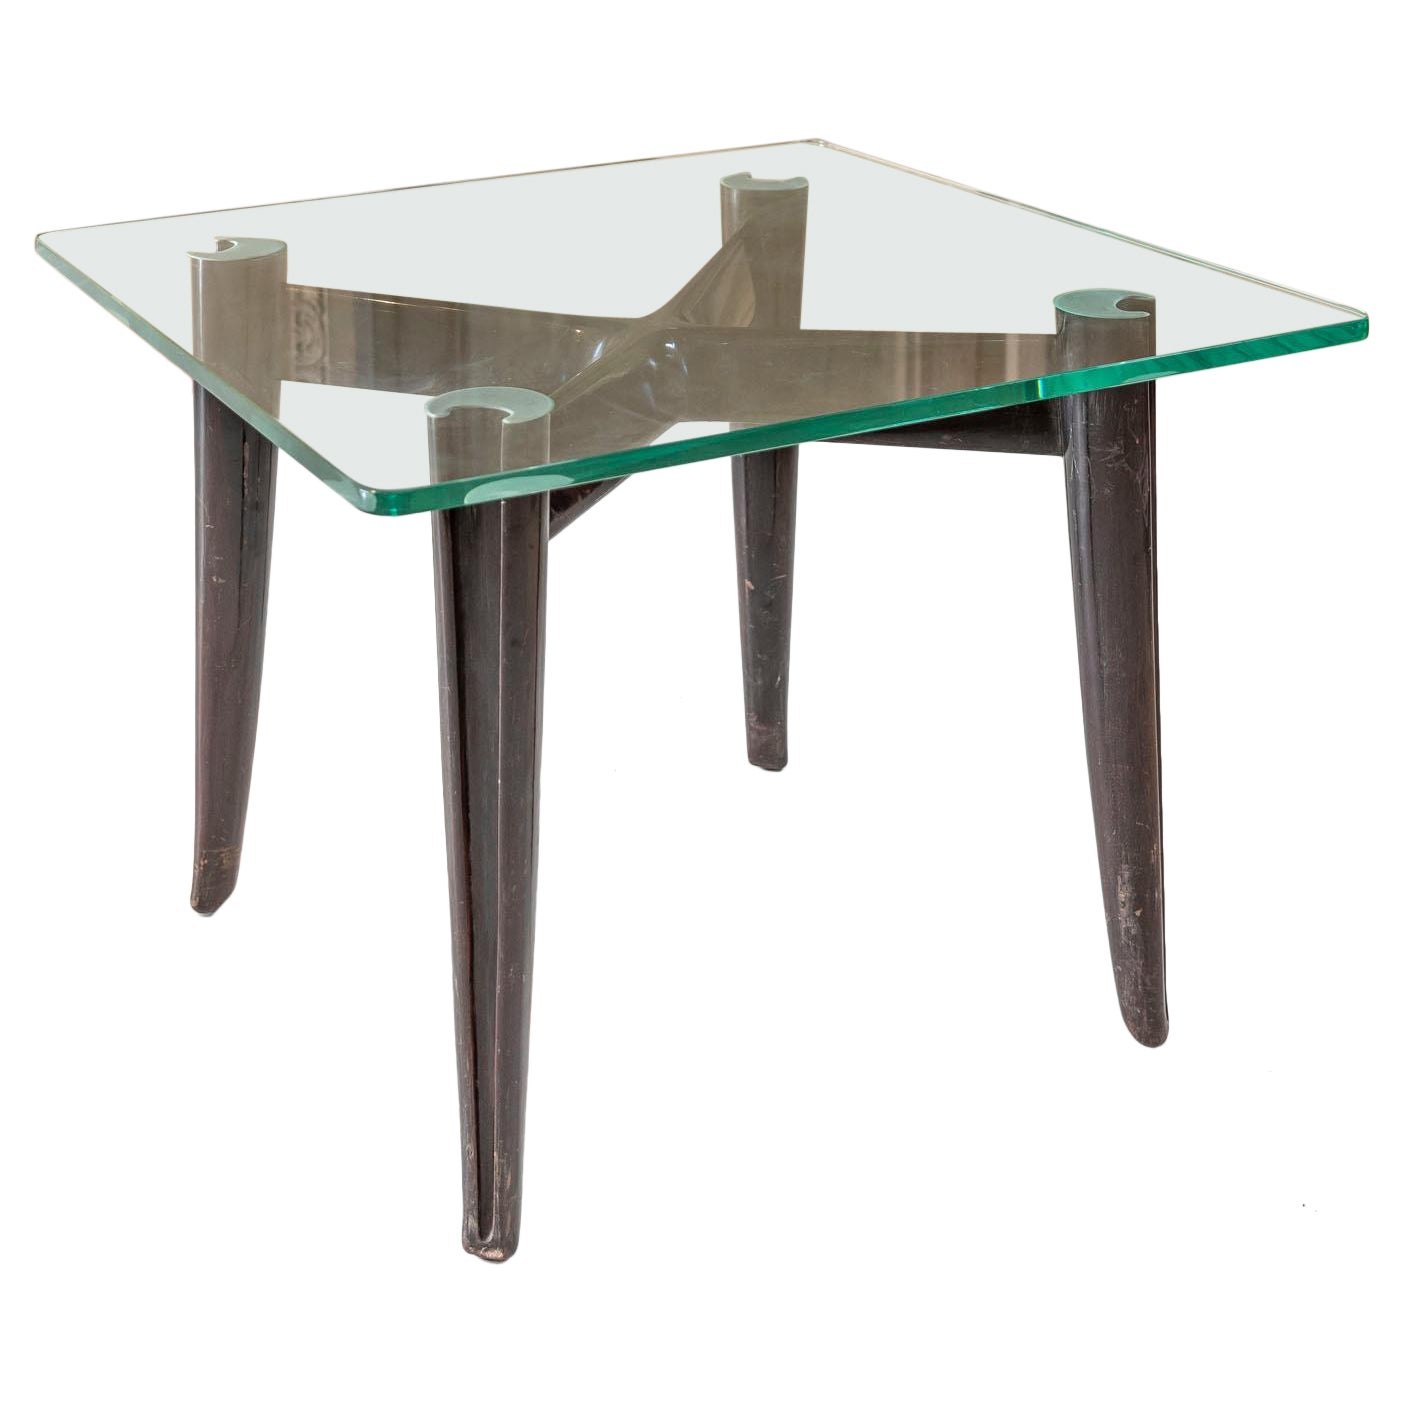 Tisch aus Glas und Holz, Osvaldo Borsani zugeschrieben